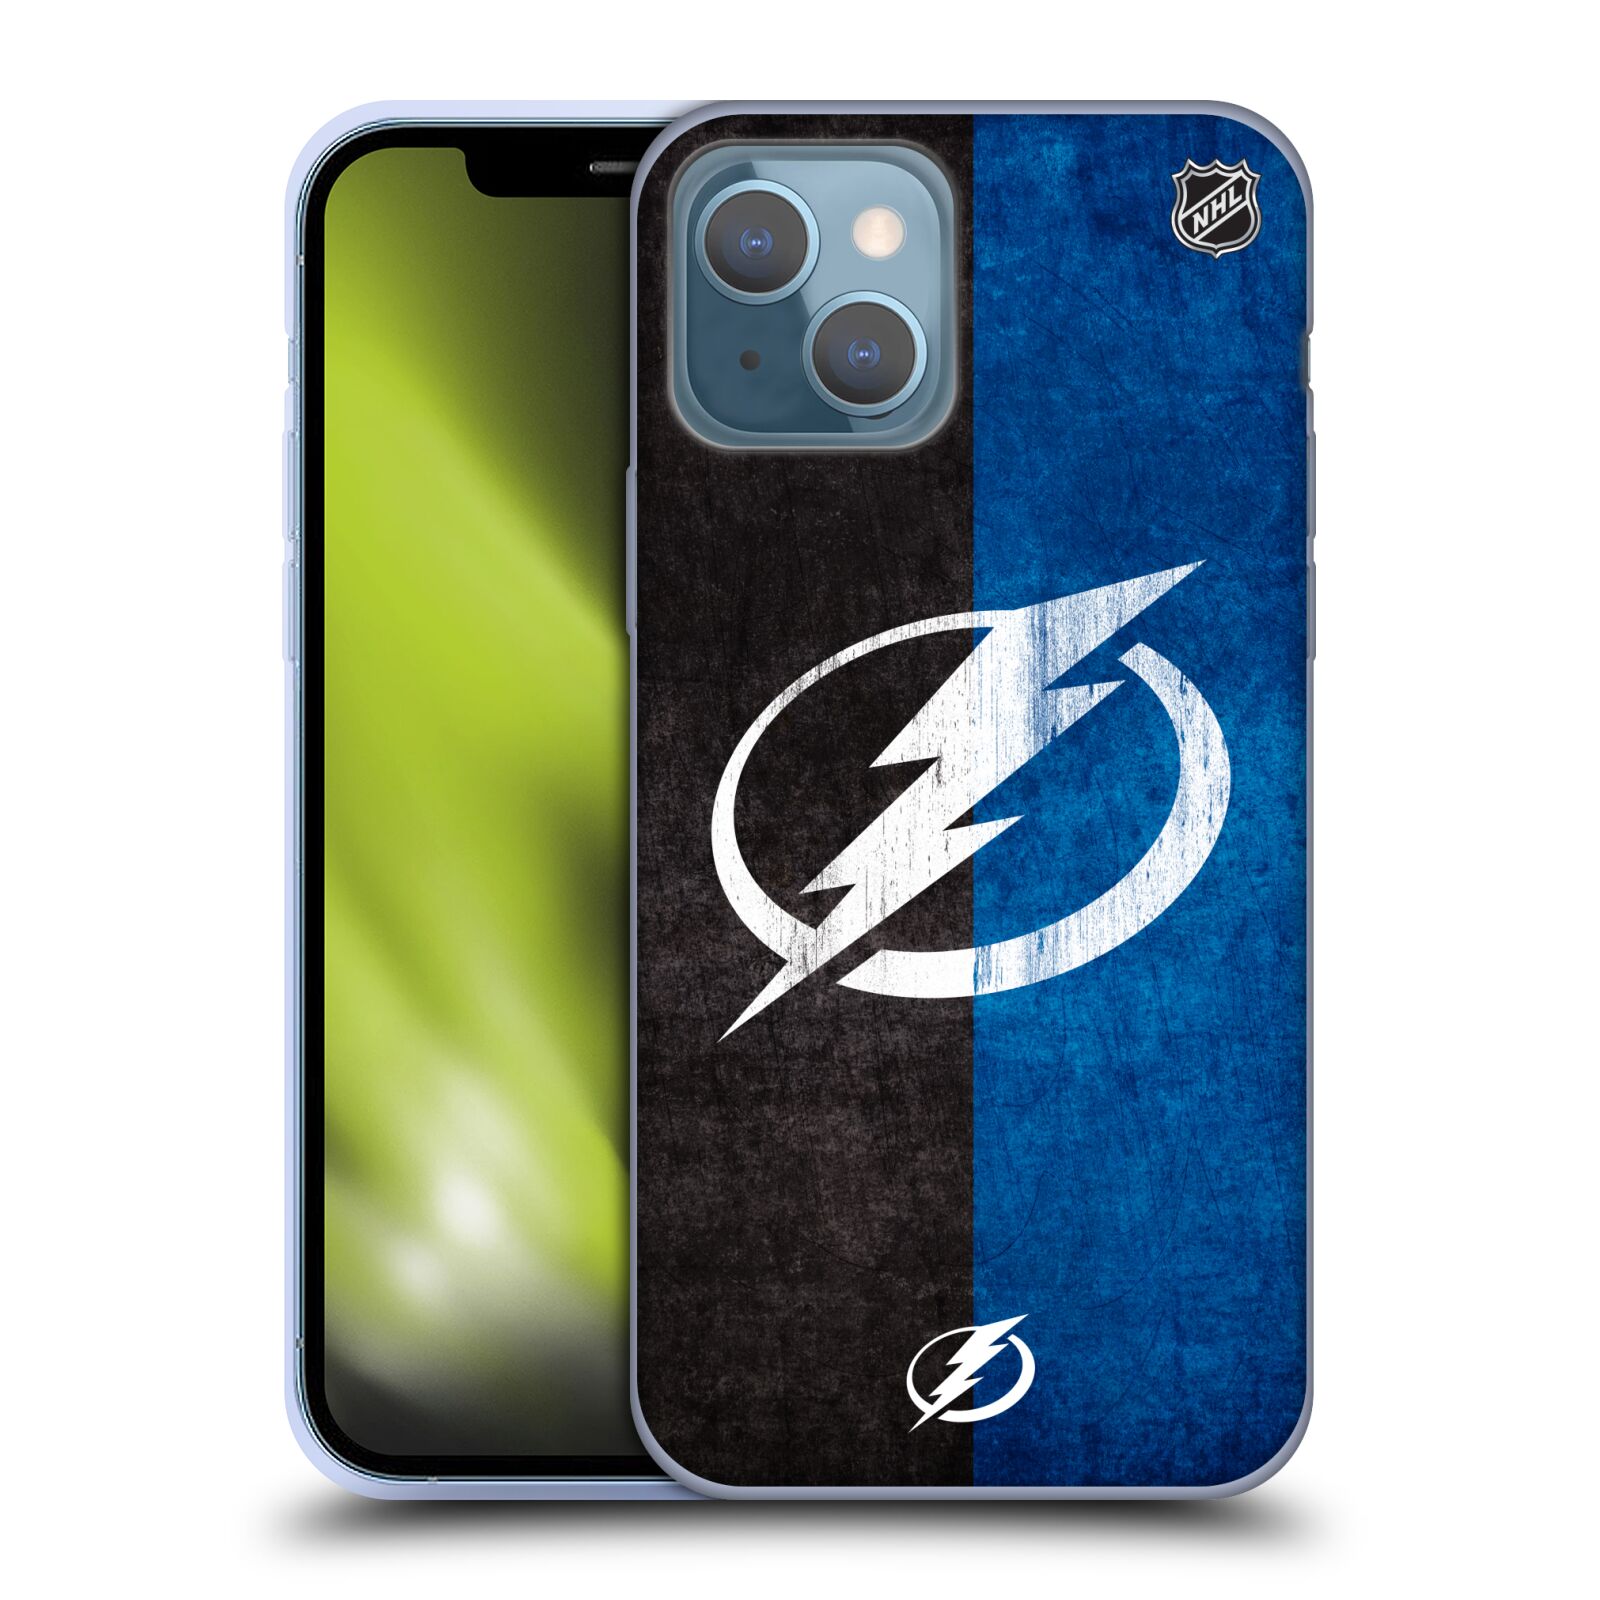 Silikonové pouzdro na mobil Apple iPhone 13 - NHL - Půlené logo Tampa Bay Lightning (Silikonový kryt, obal, pouzdro na mobilní telefon Apple iPhone 13 s licencovaným motivem NHL - Půlené logo Tampa Bay Lightning)